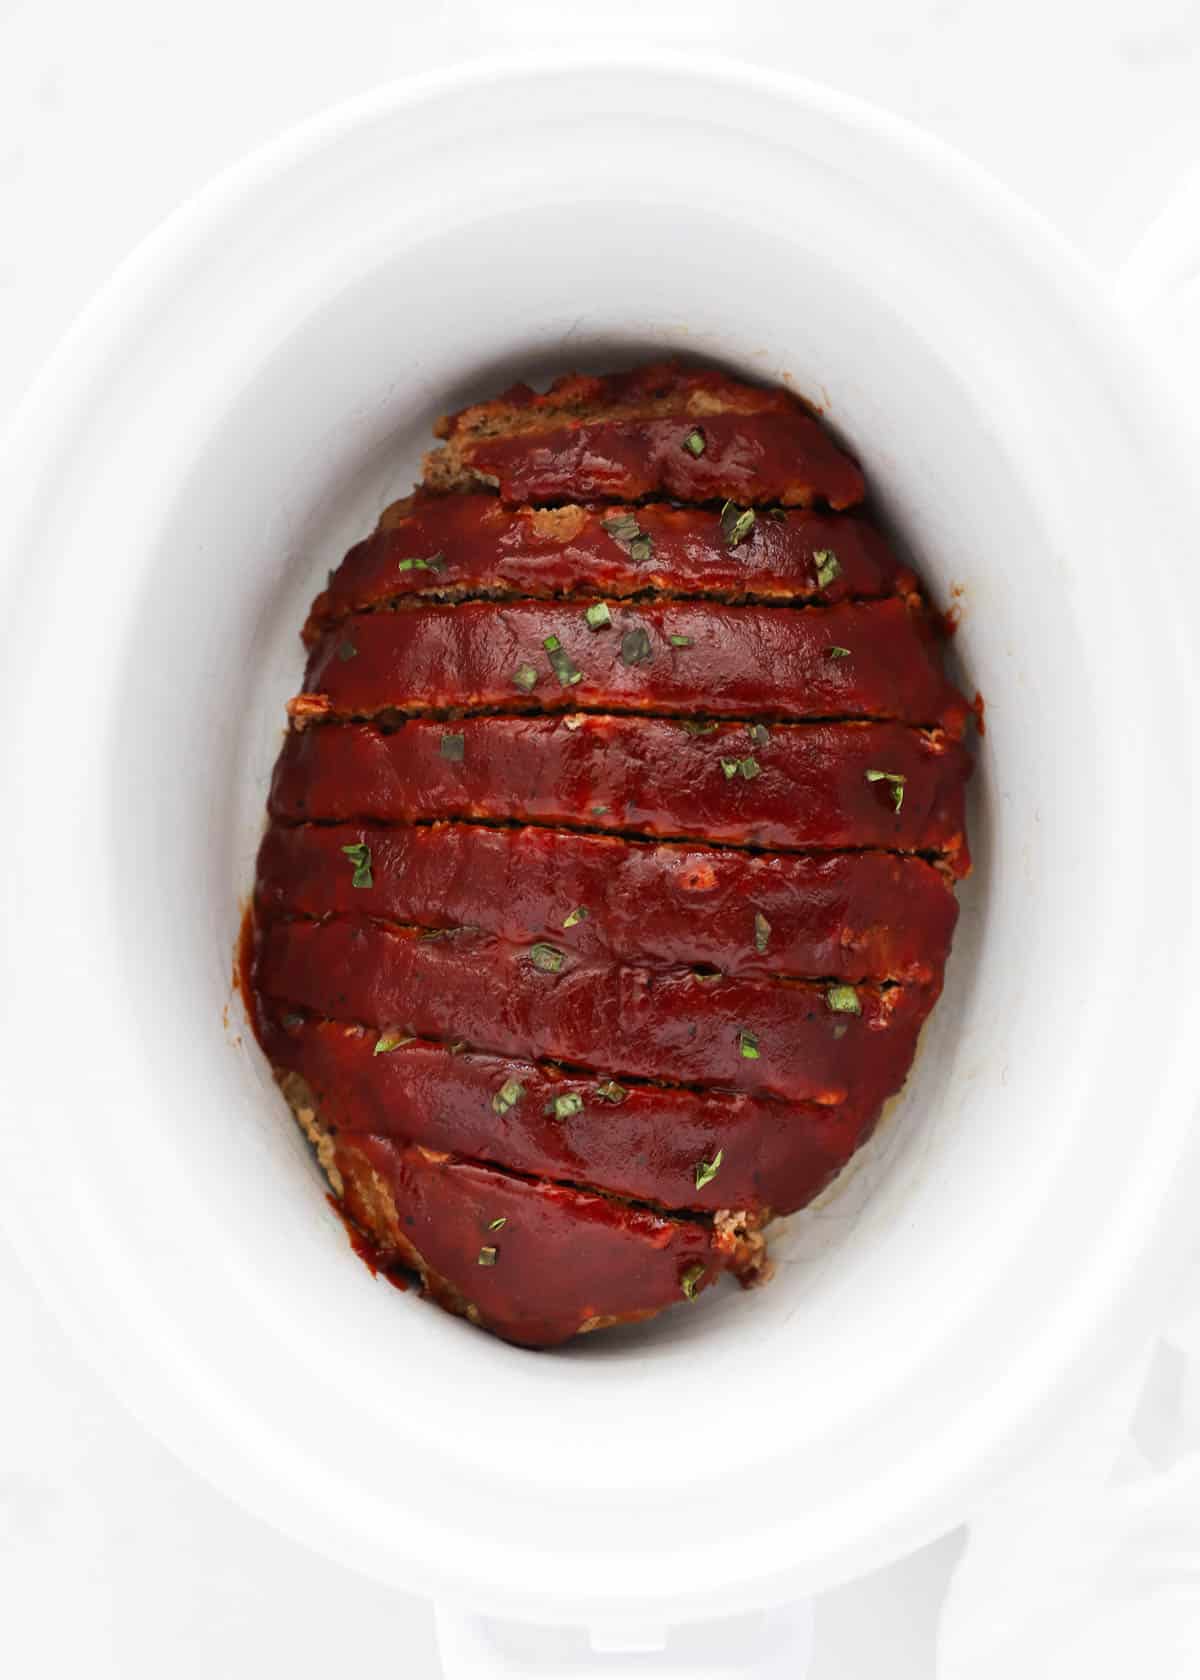 meatloaf sliced in crockpot